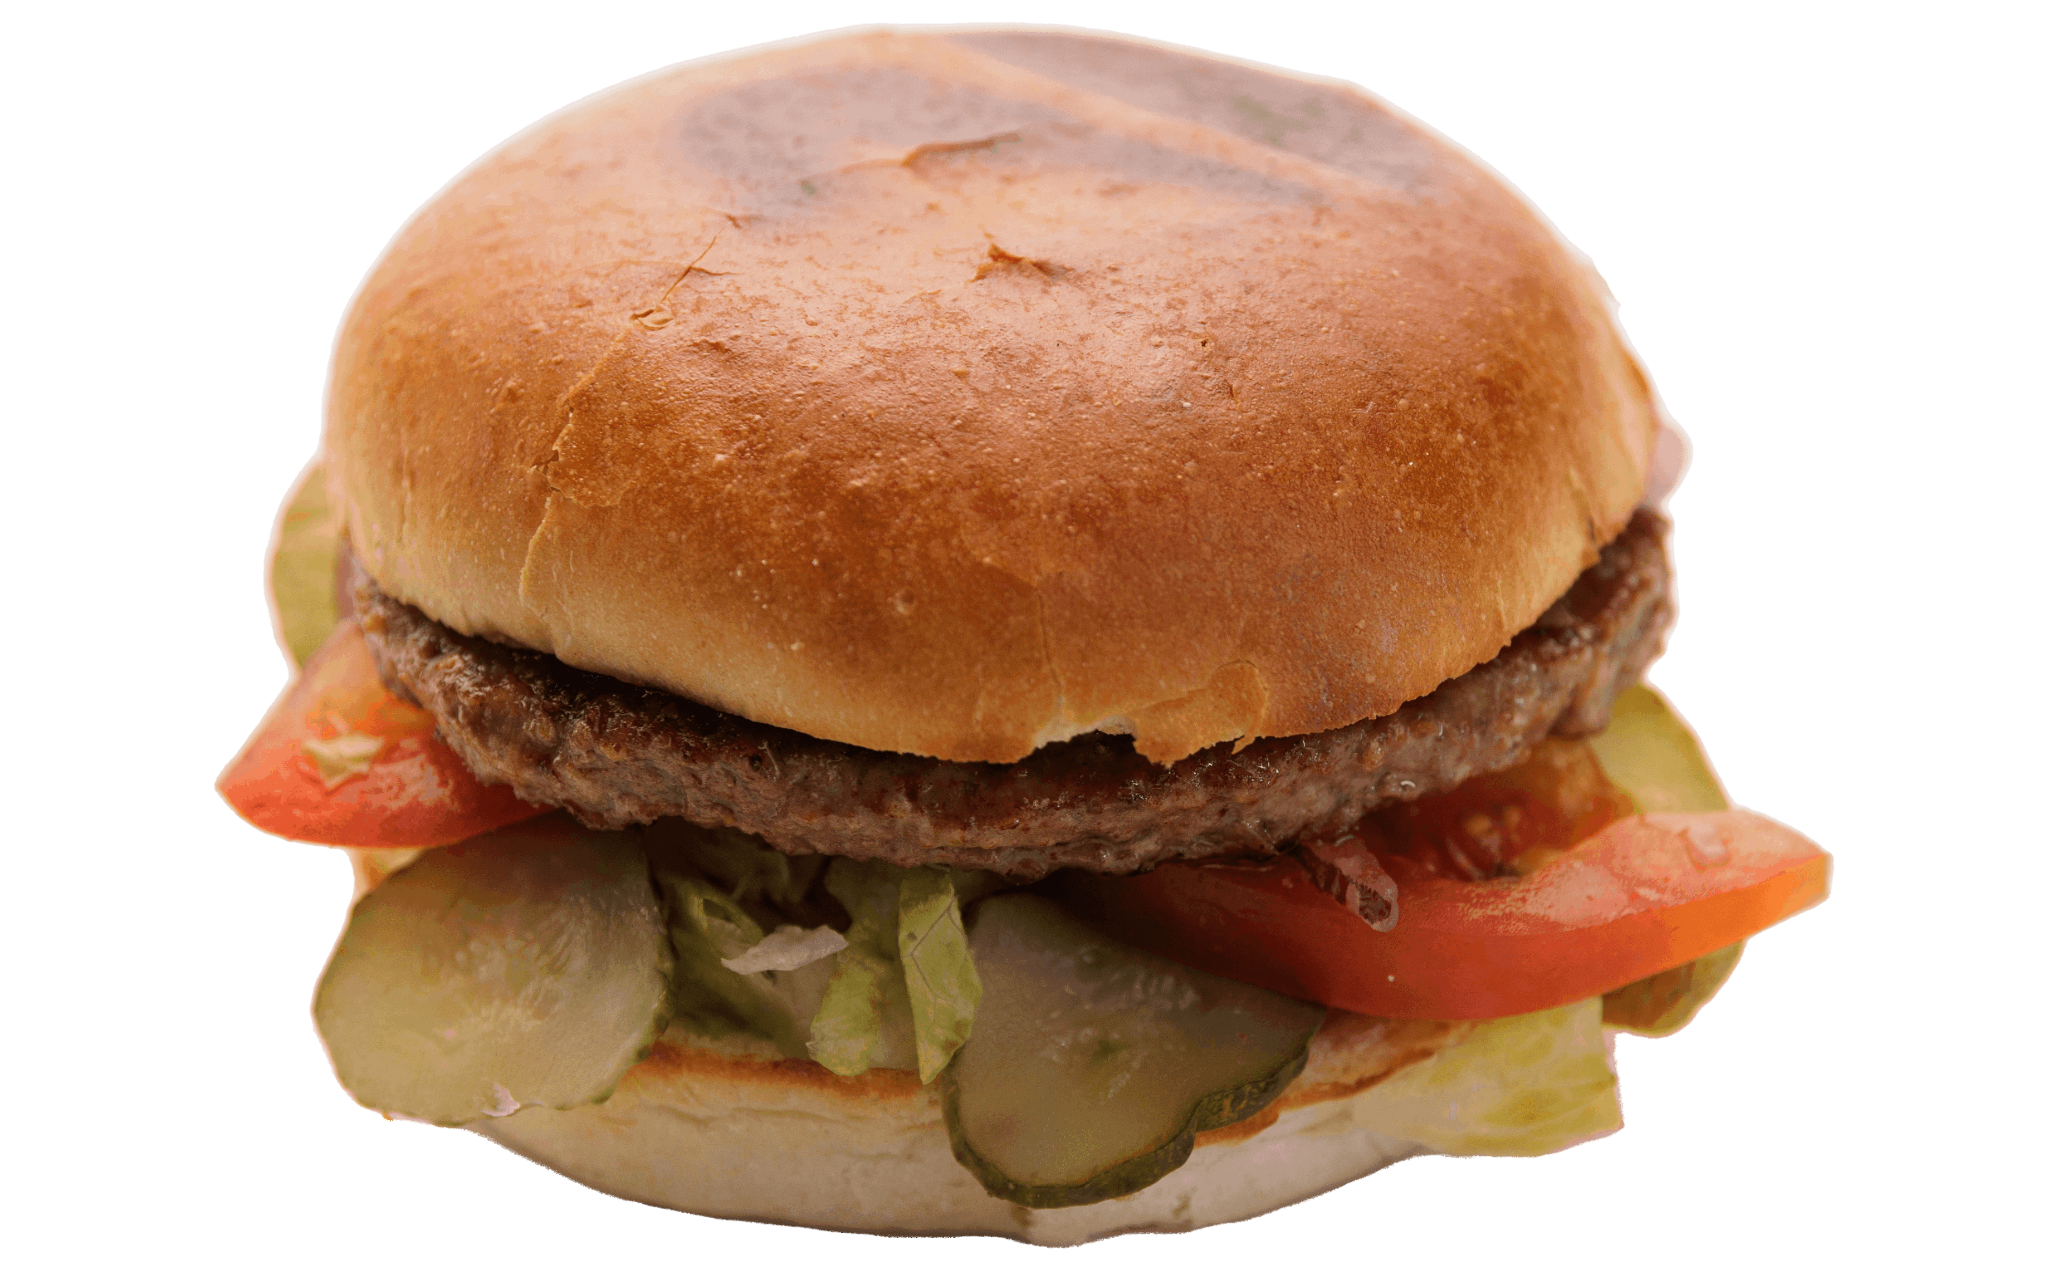 70. Big Almindelig Burger